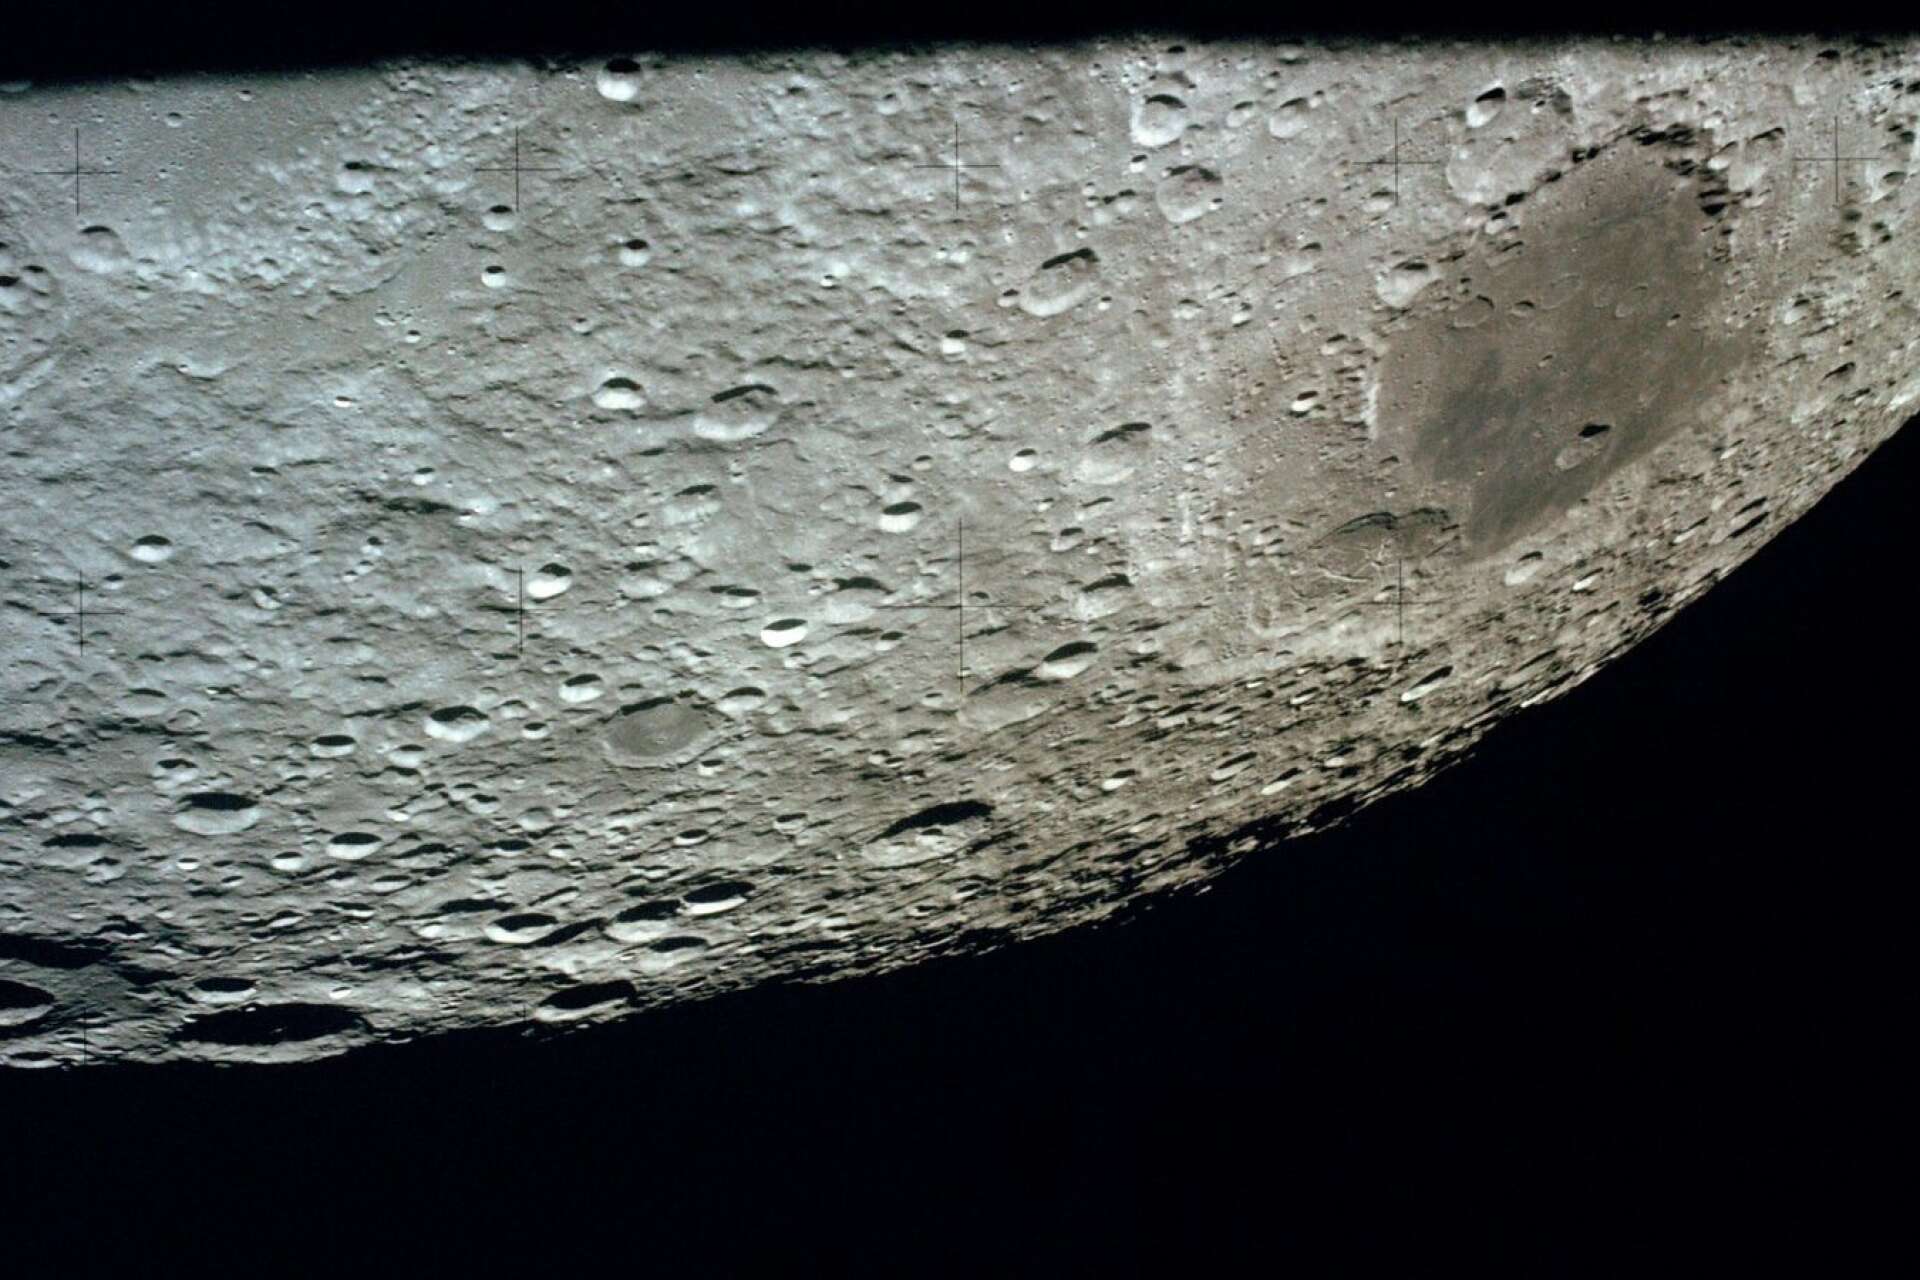 Mare Moscoviense på månens baksida.